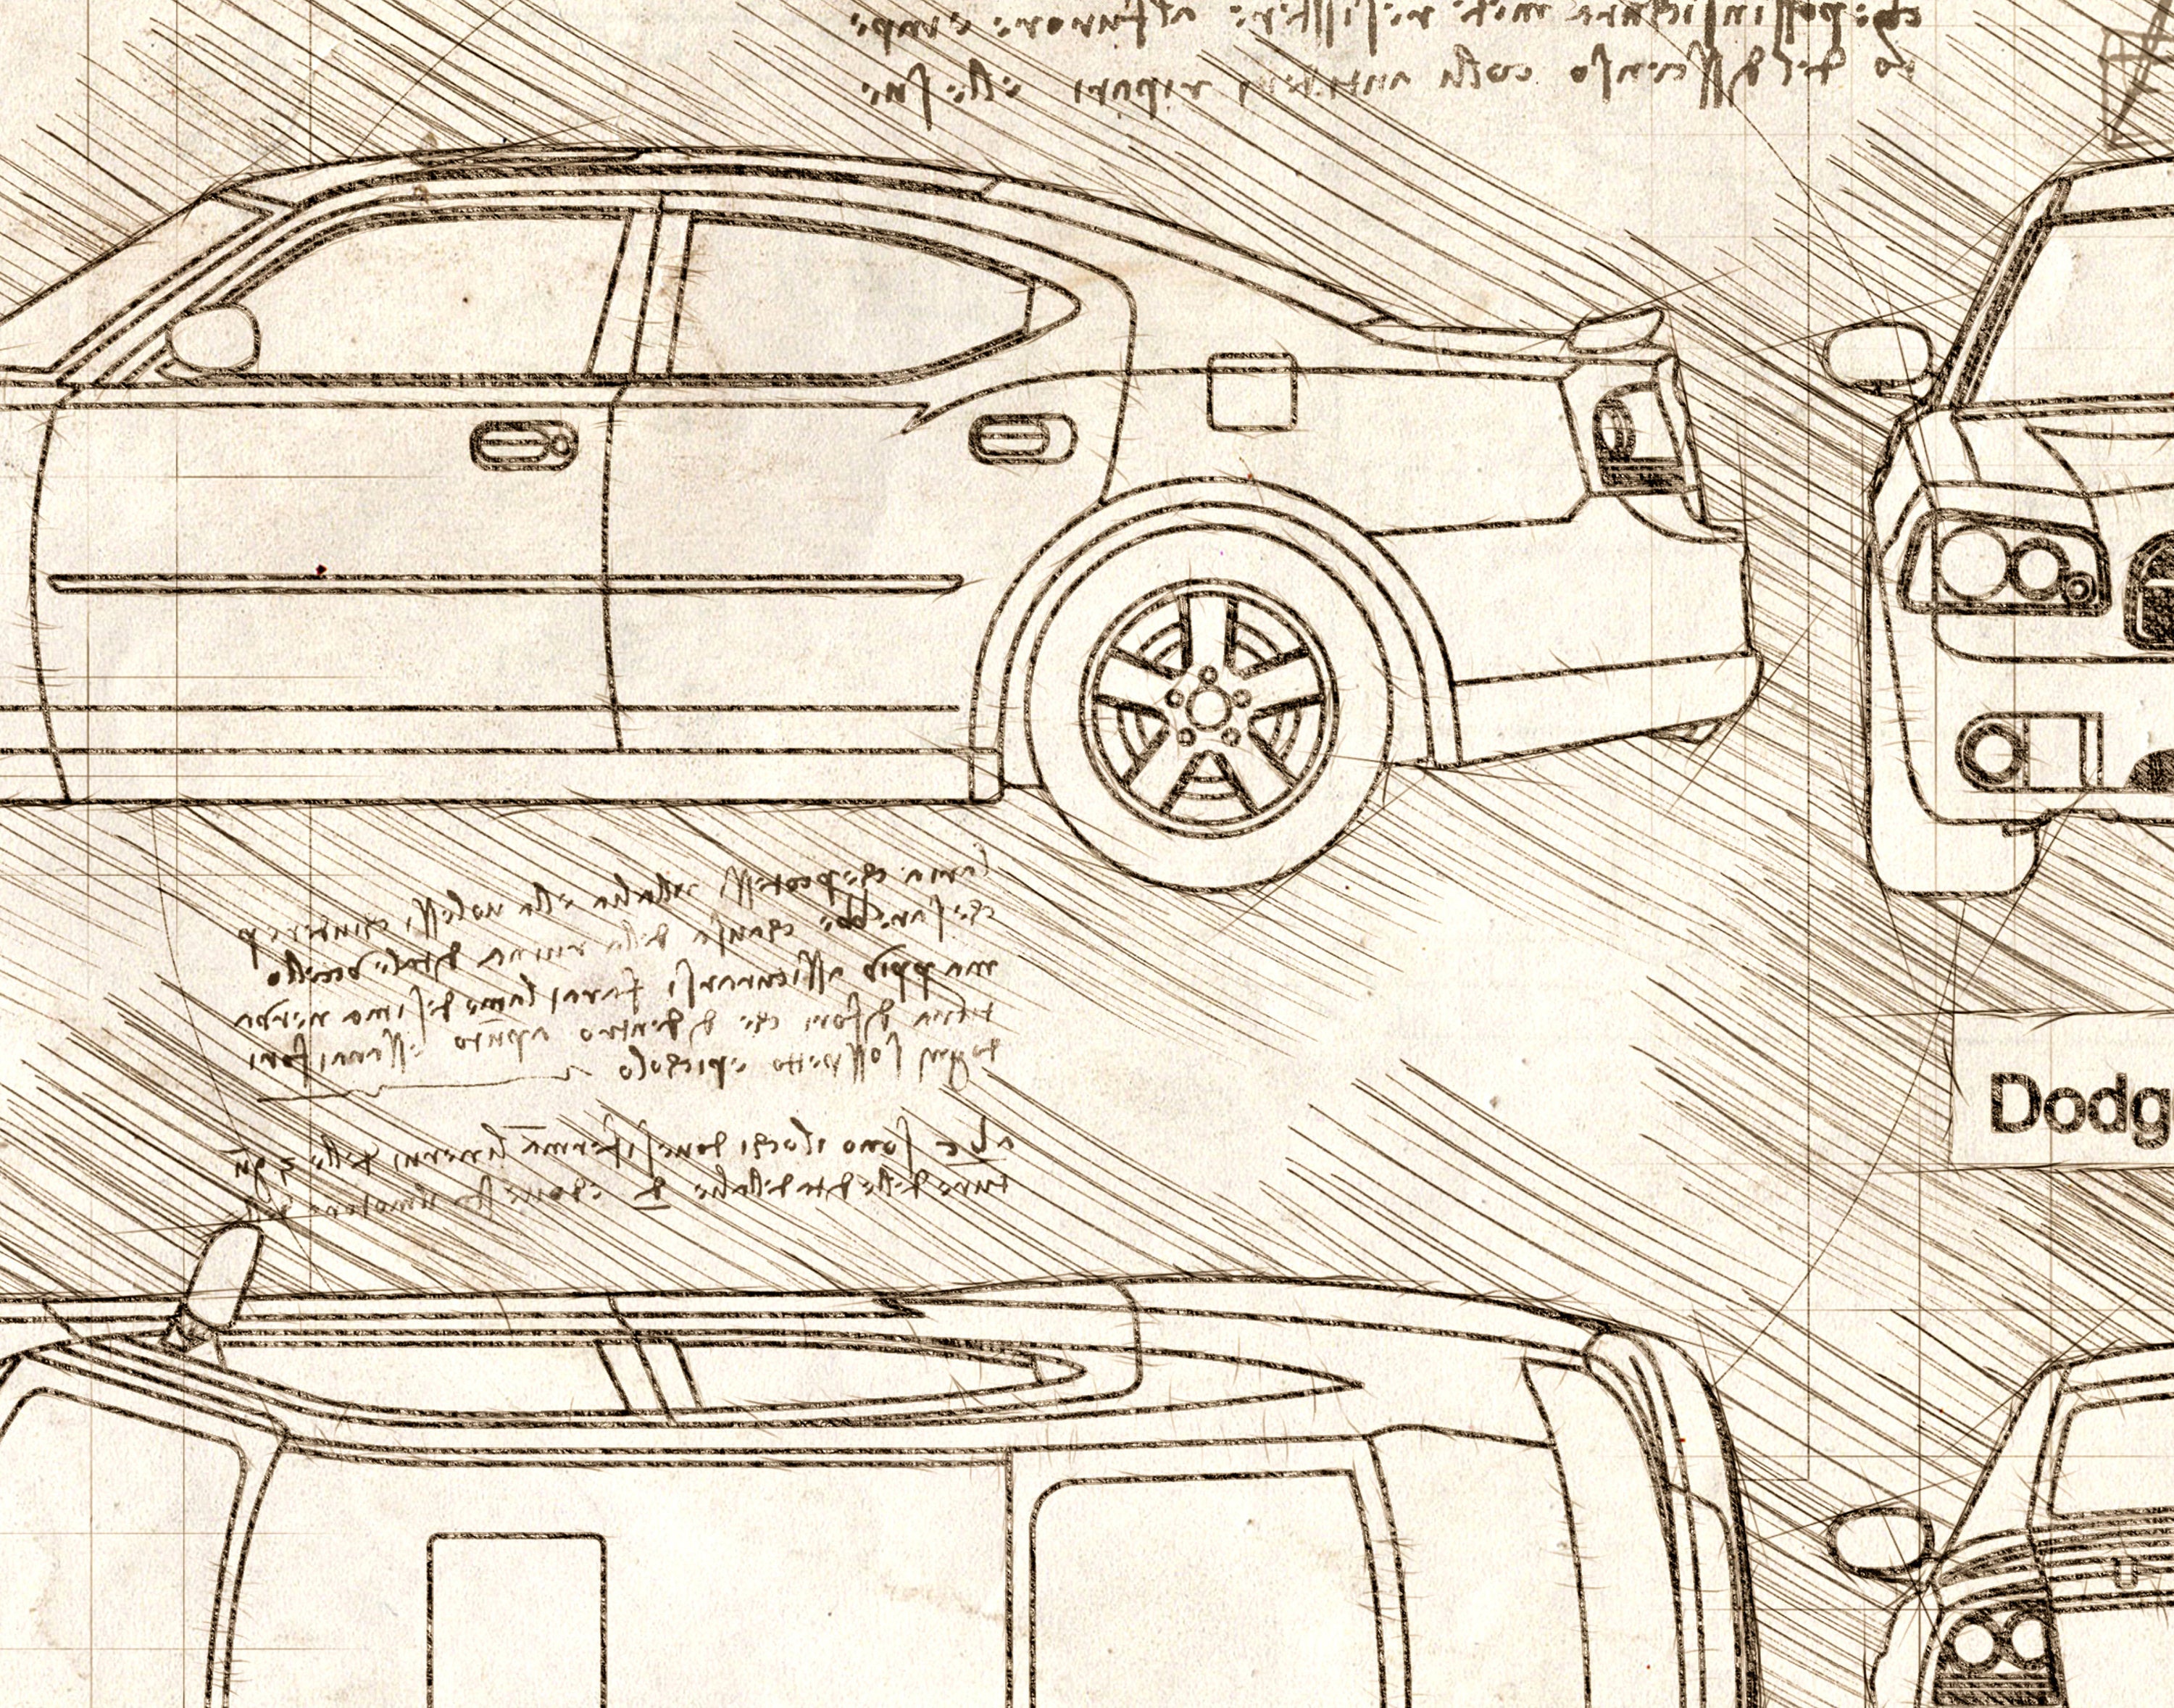 Dodge Charger Sketch  nitr01768  Flickr